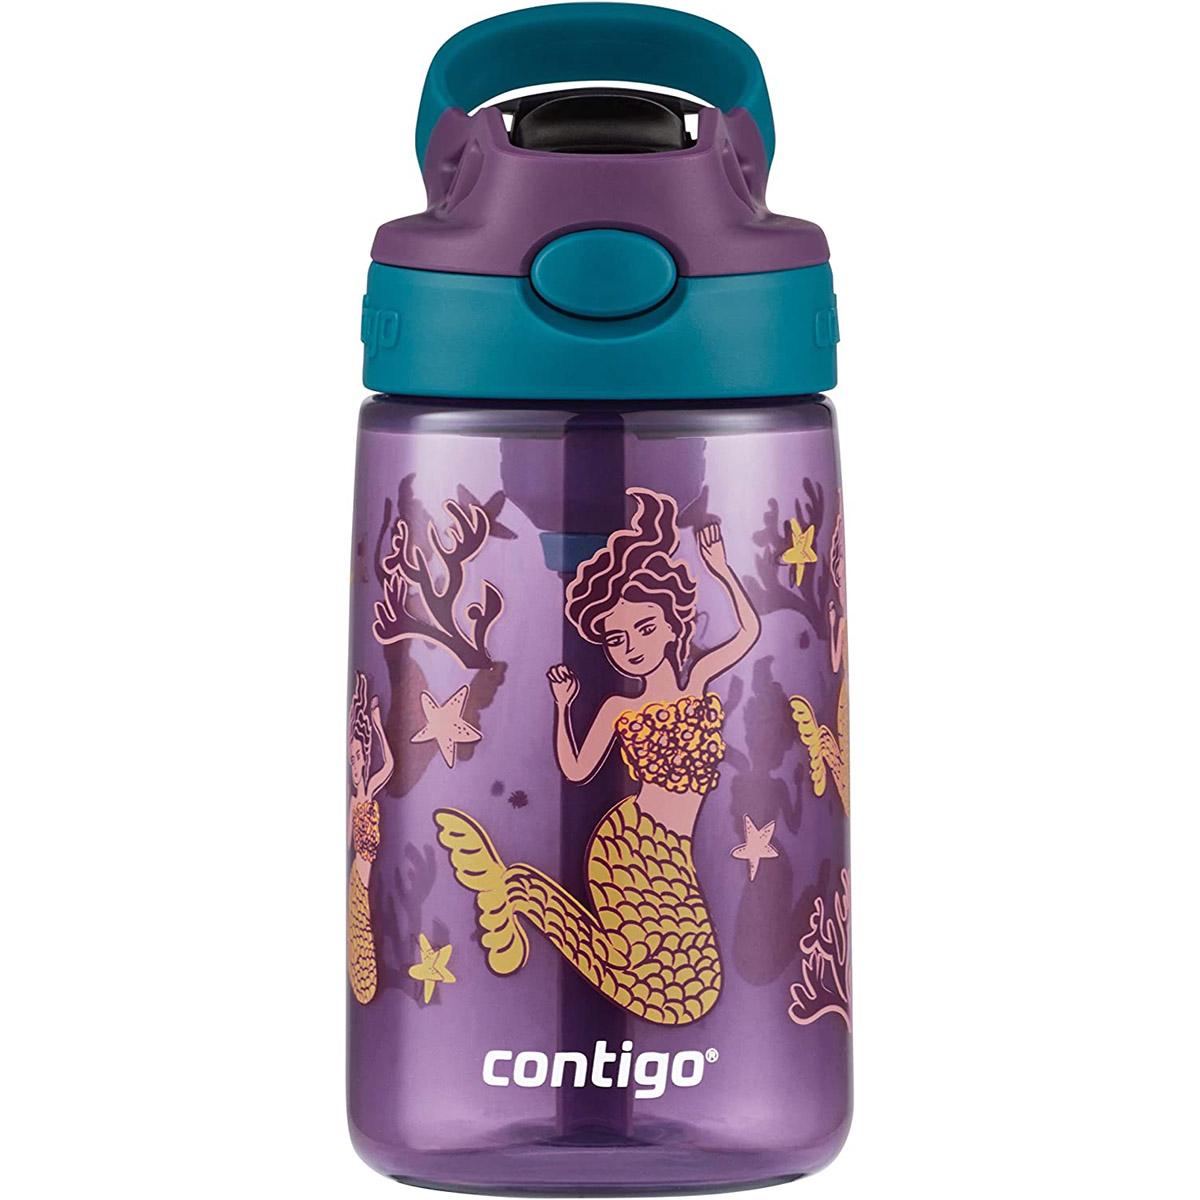 Contigo Kids Water Bottle for $8.79